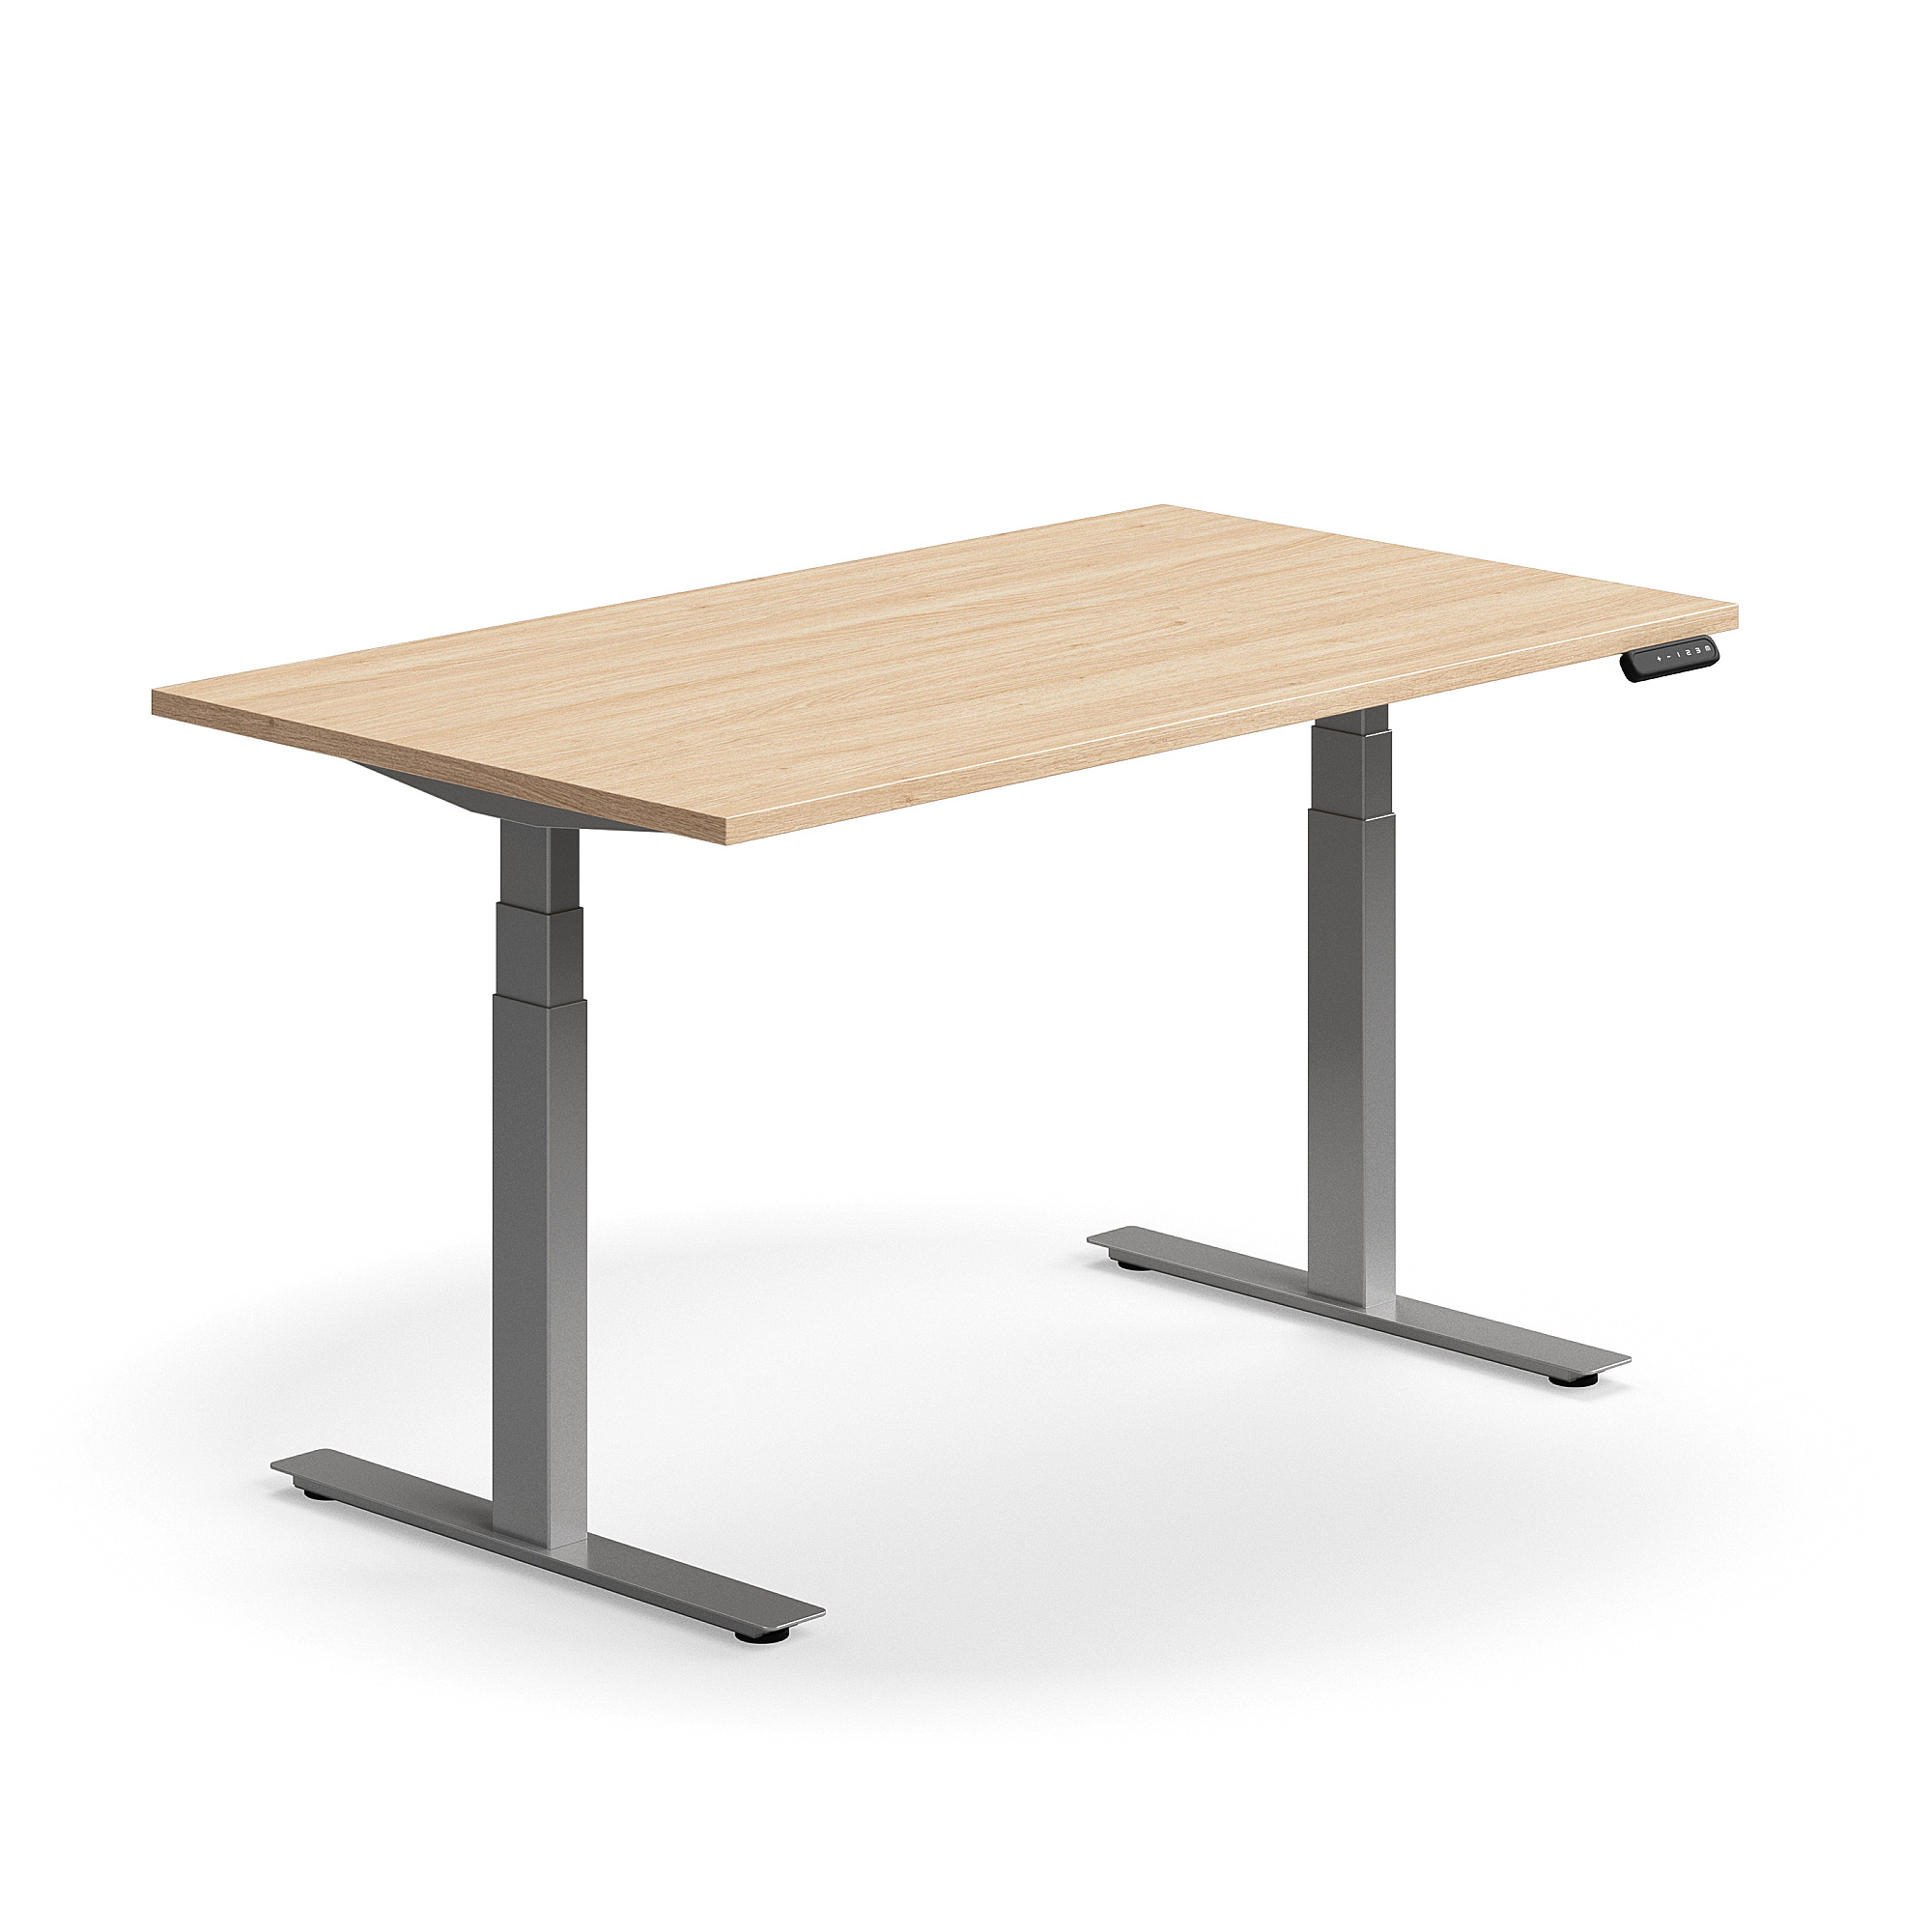 Výškově nastavitelný stůl QBUS, 1400x800 mm, stříbrná podnož, dub